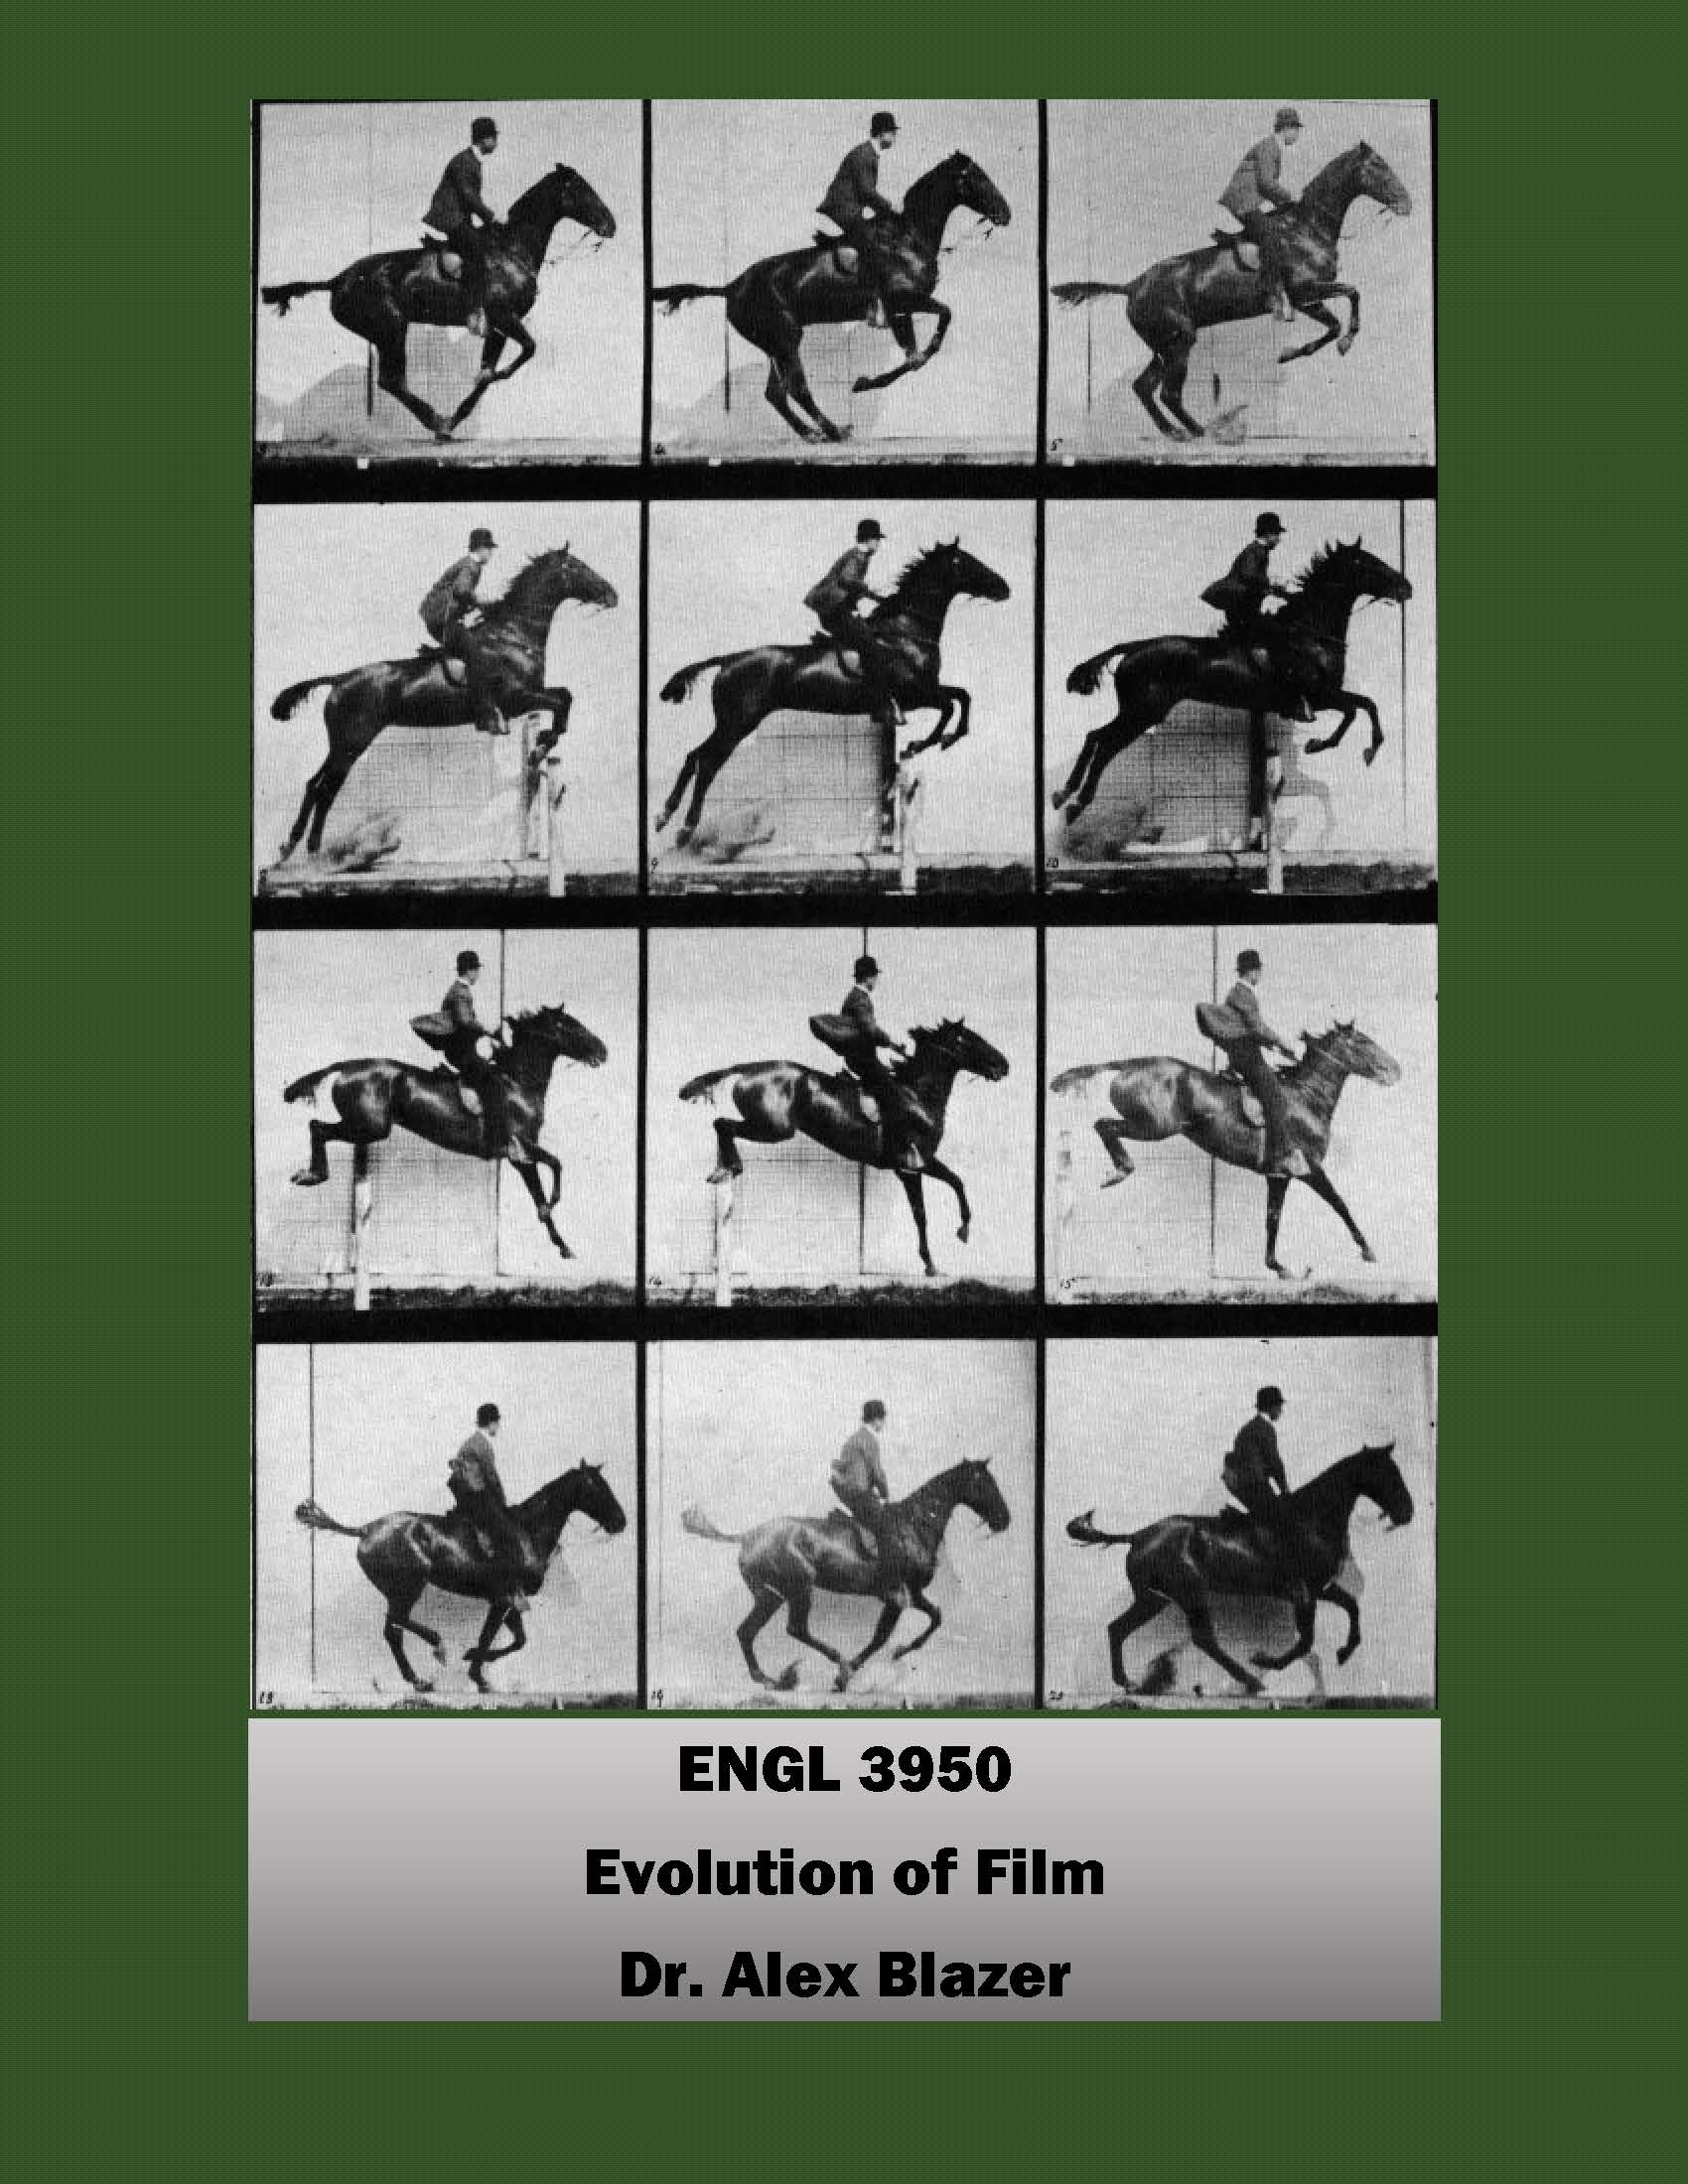 ENGL 3950 Evolution of Film